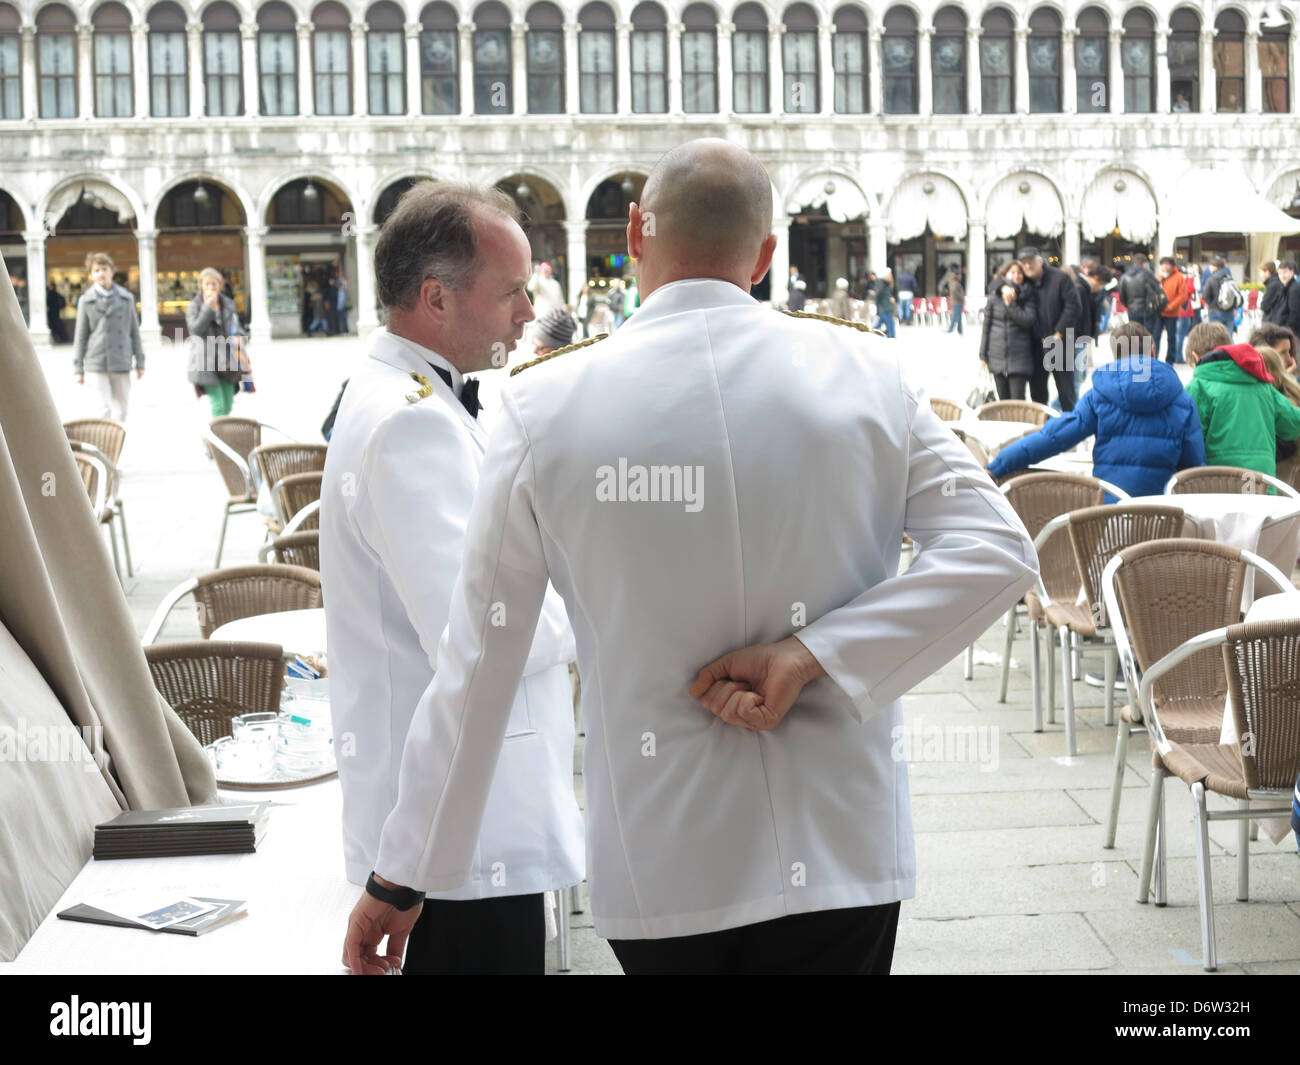 En face de l'hôtellerie Café Florian au Marcus place Saint-Marc à Venise - Italie. Banque D'Images